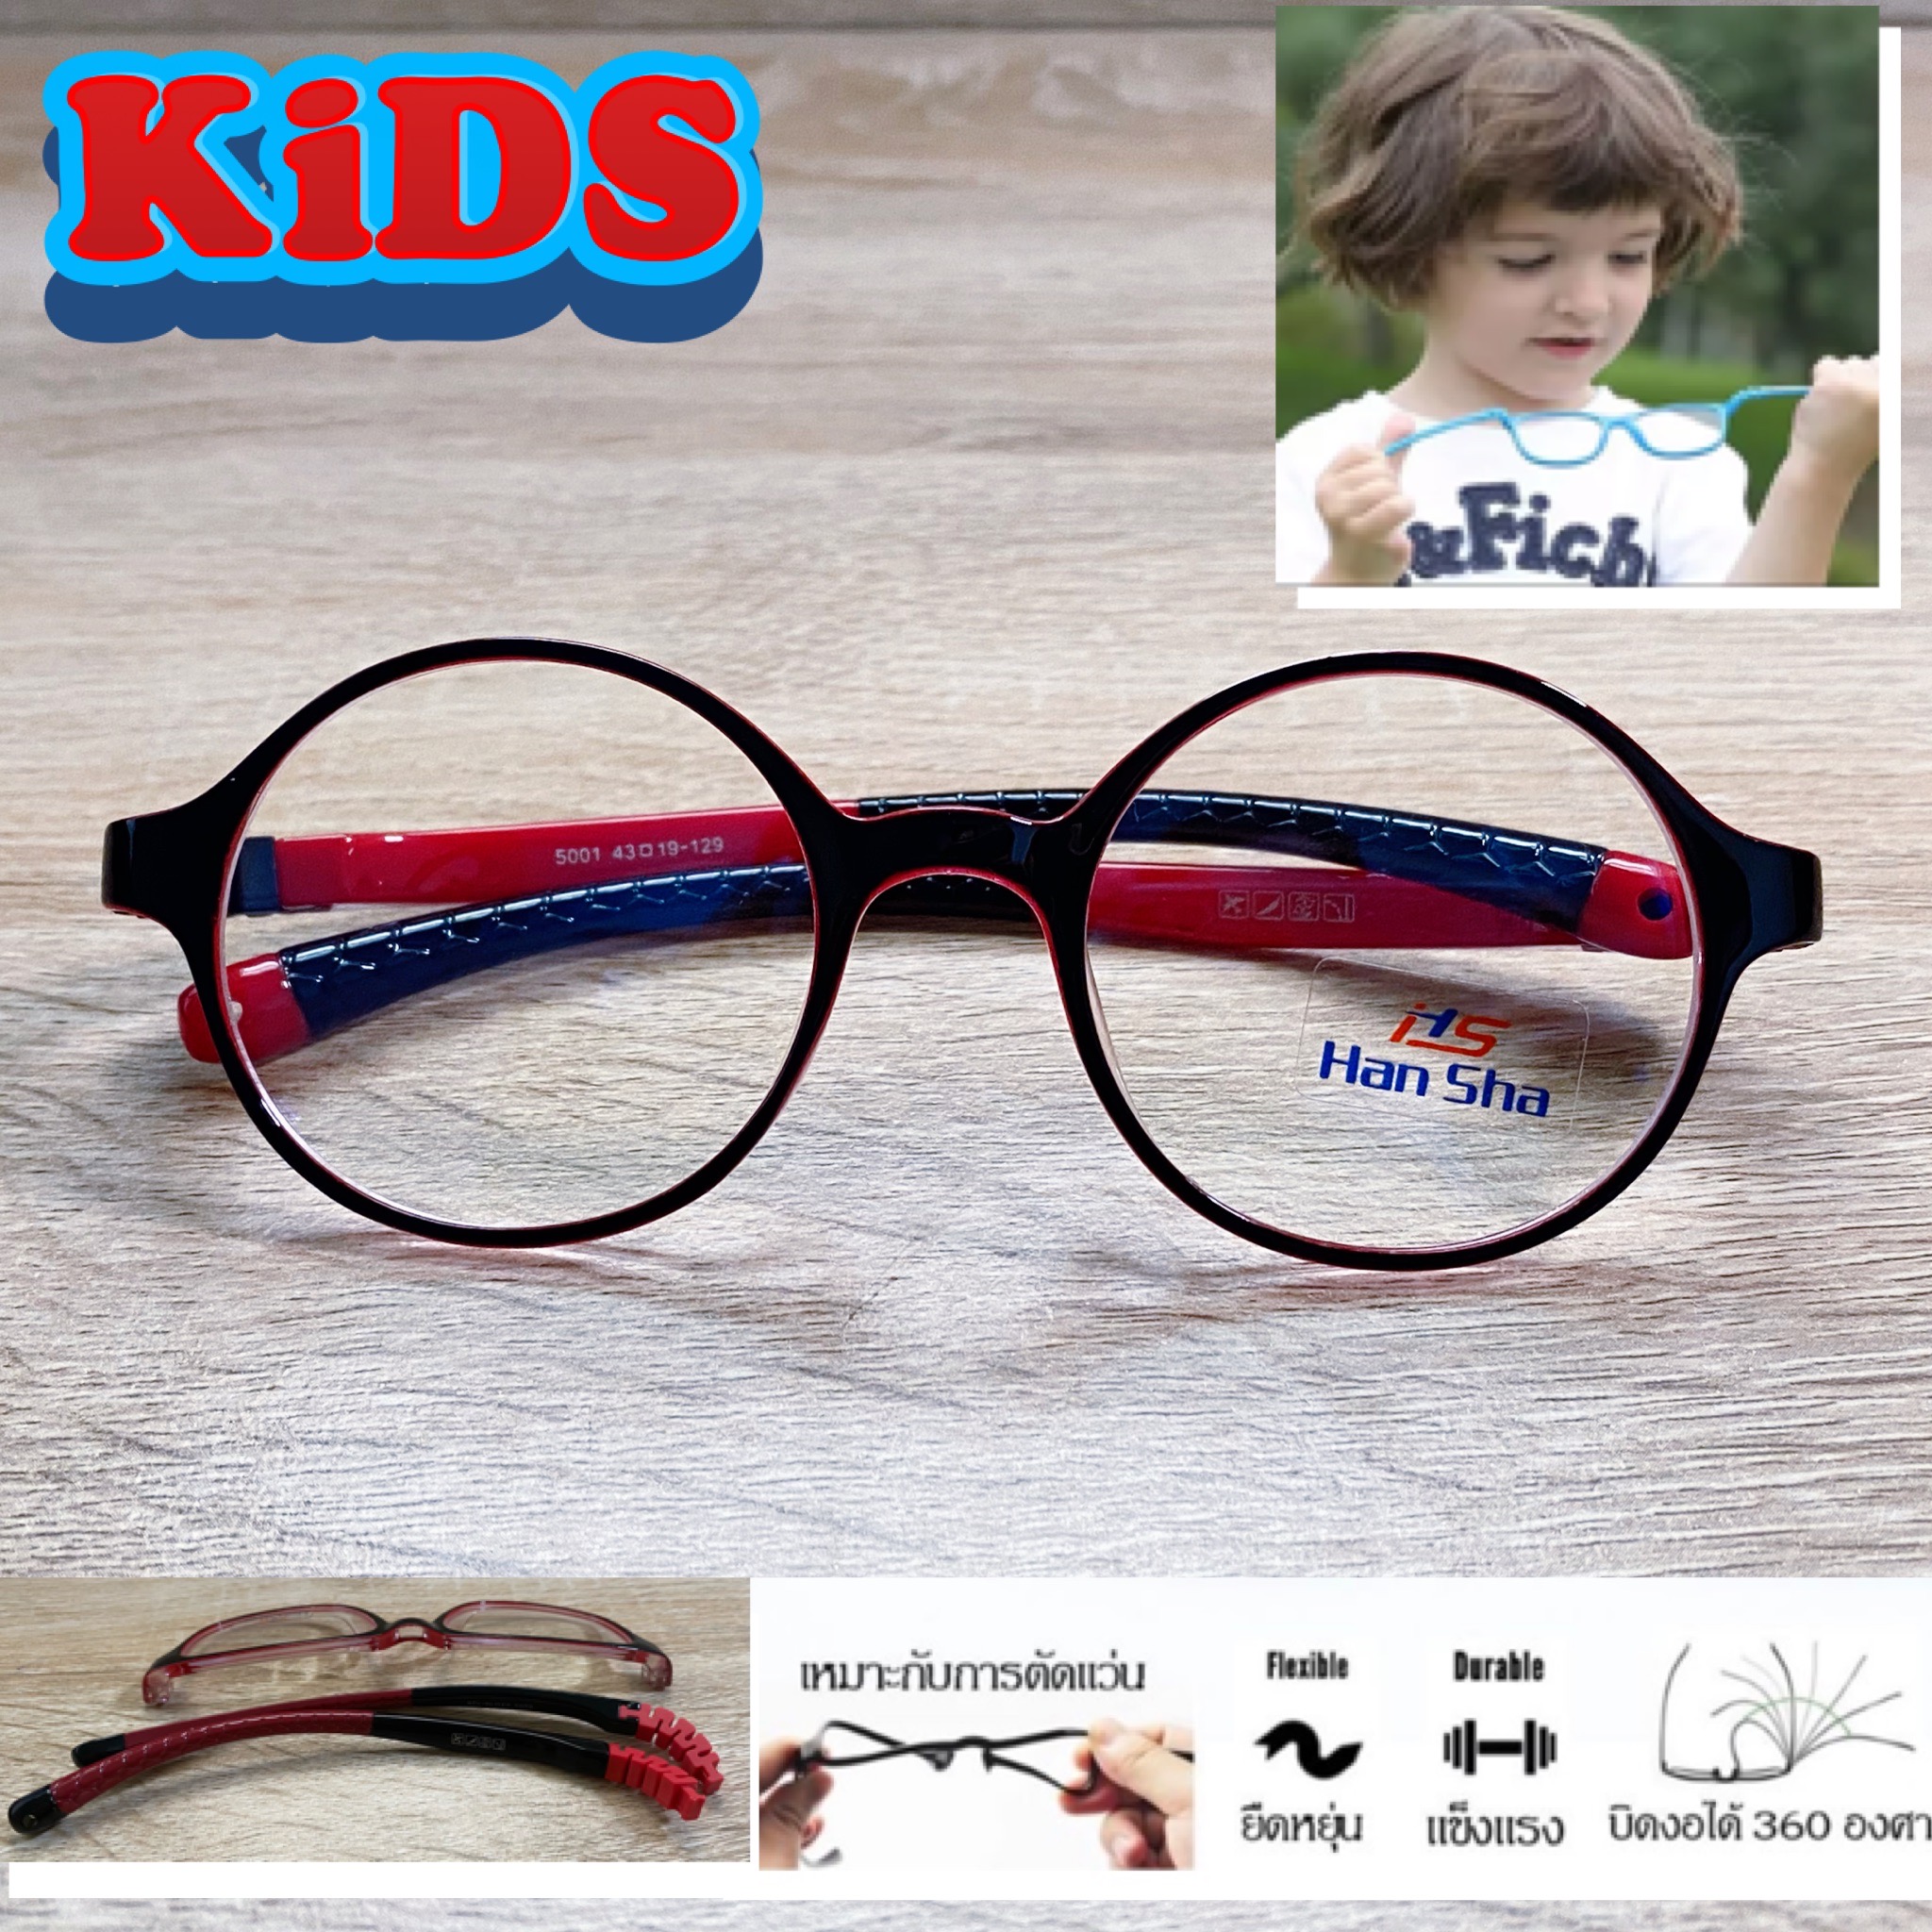 แว่นตาเด็ก กรอบแว่นตาเด็ก สำหรับตัดเลนส์ แว่นตา Han Sha รุ่น 5001 สีดำเงาข้อดำ ขาไม่ใช้น็อต ยืดหยุ่น ถอดขาเปลี่ยนได้ วัสดุ TR 90 เบา ไม่แตกหัก